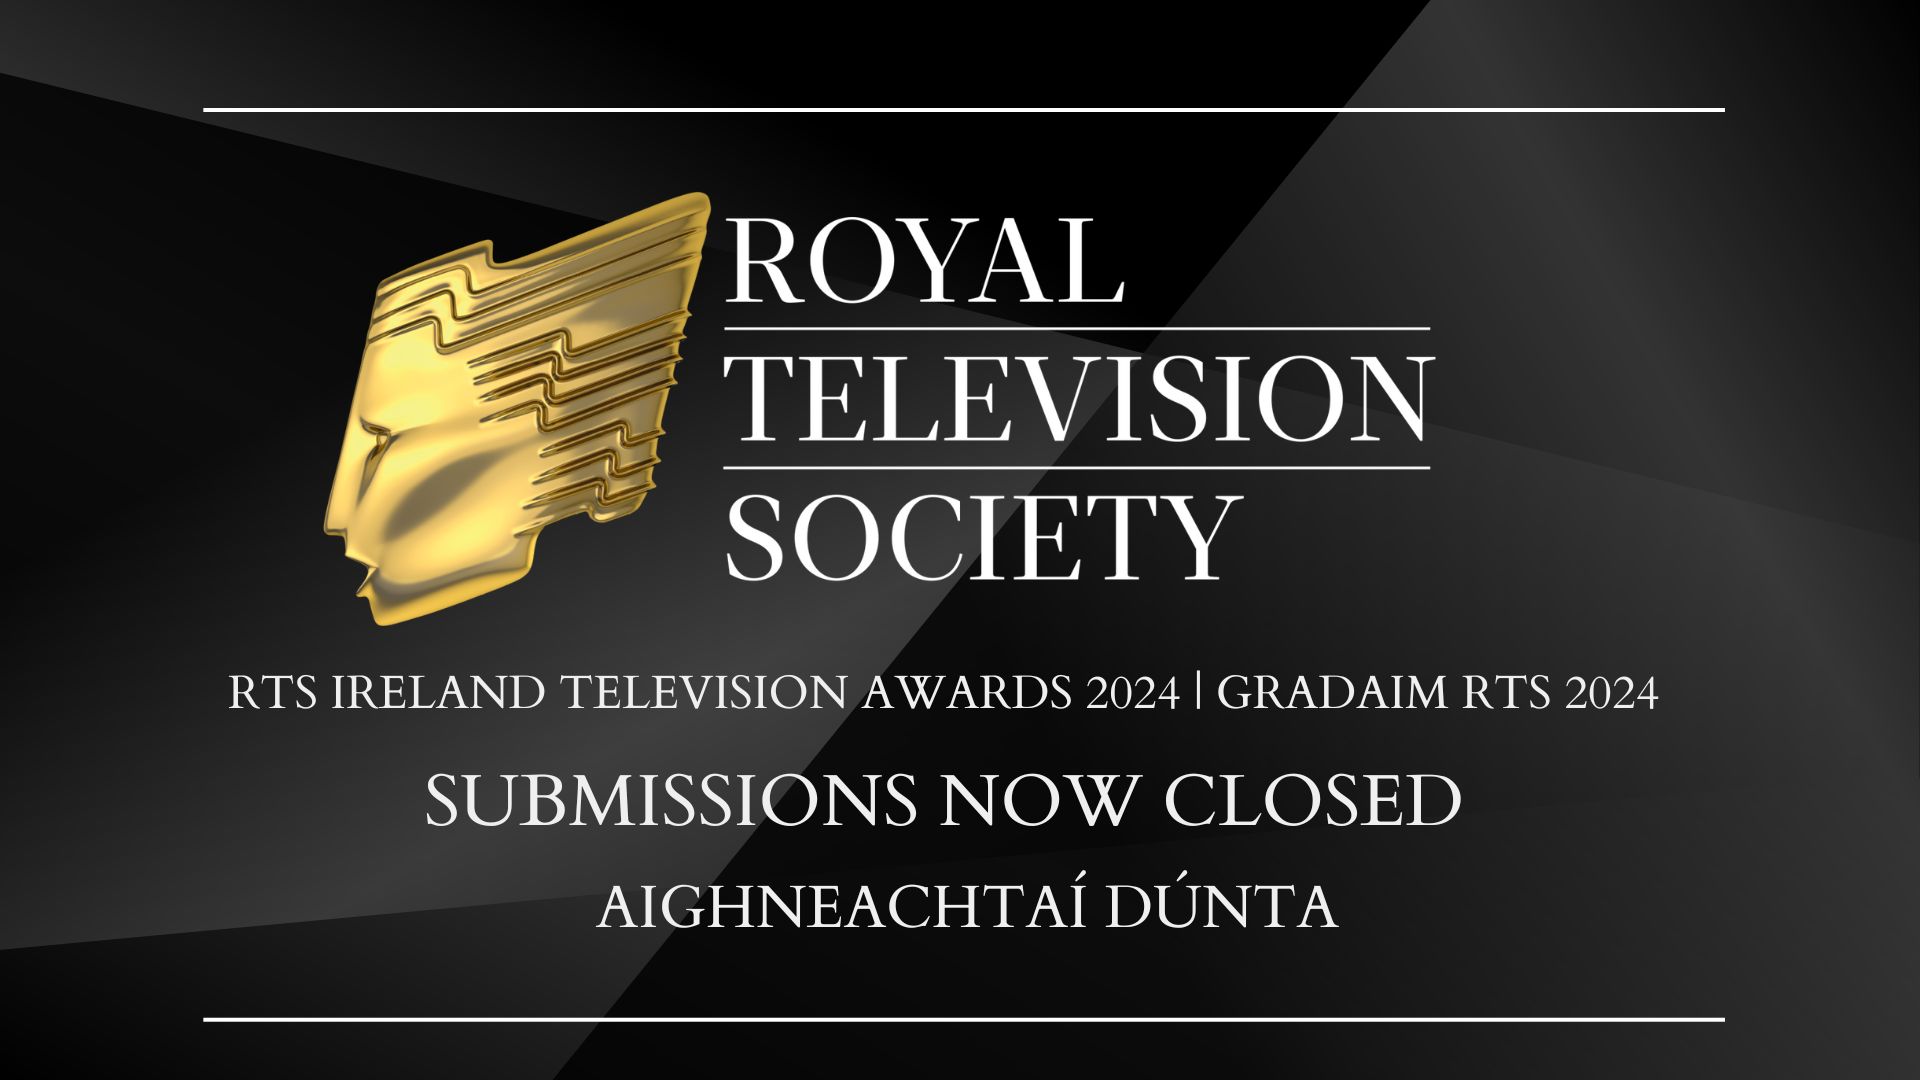 RTS Ireland Television Awards 2024 Gradaim RTS 2024 Royal